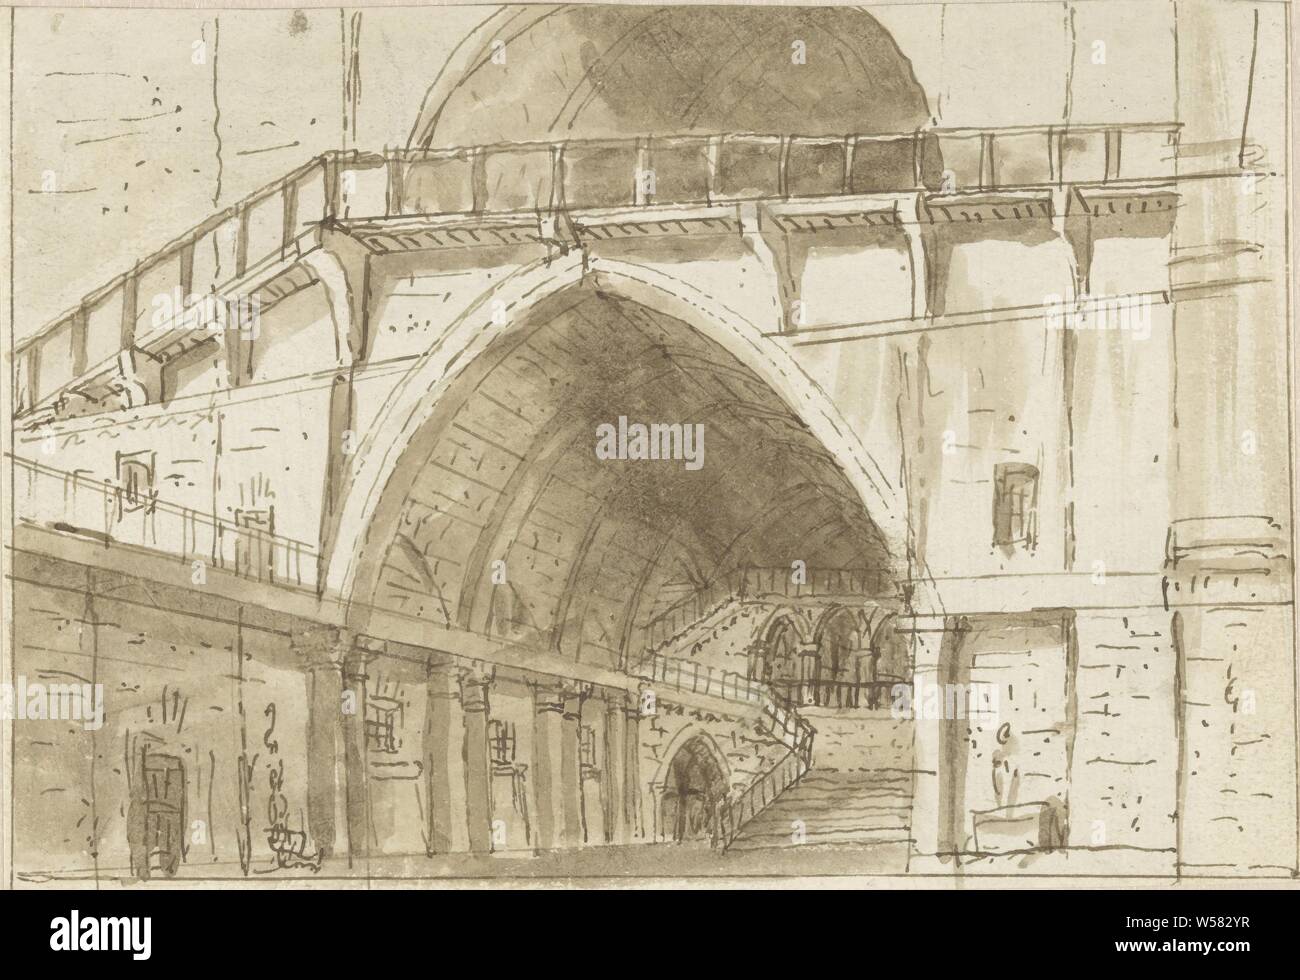 D'escalier dans un château gothique, Italie, 1770 - 1799, le papier, le graphite (minéral), encre, pinceau, h 142 mm × W 206 mm Banque D'Images